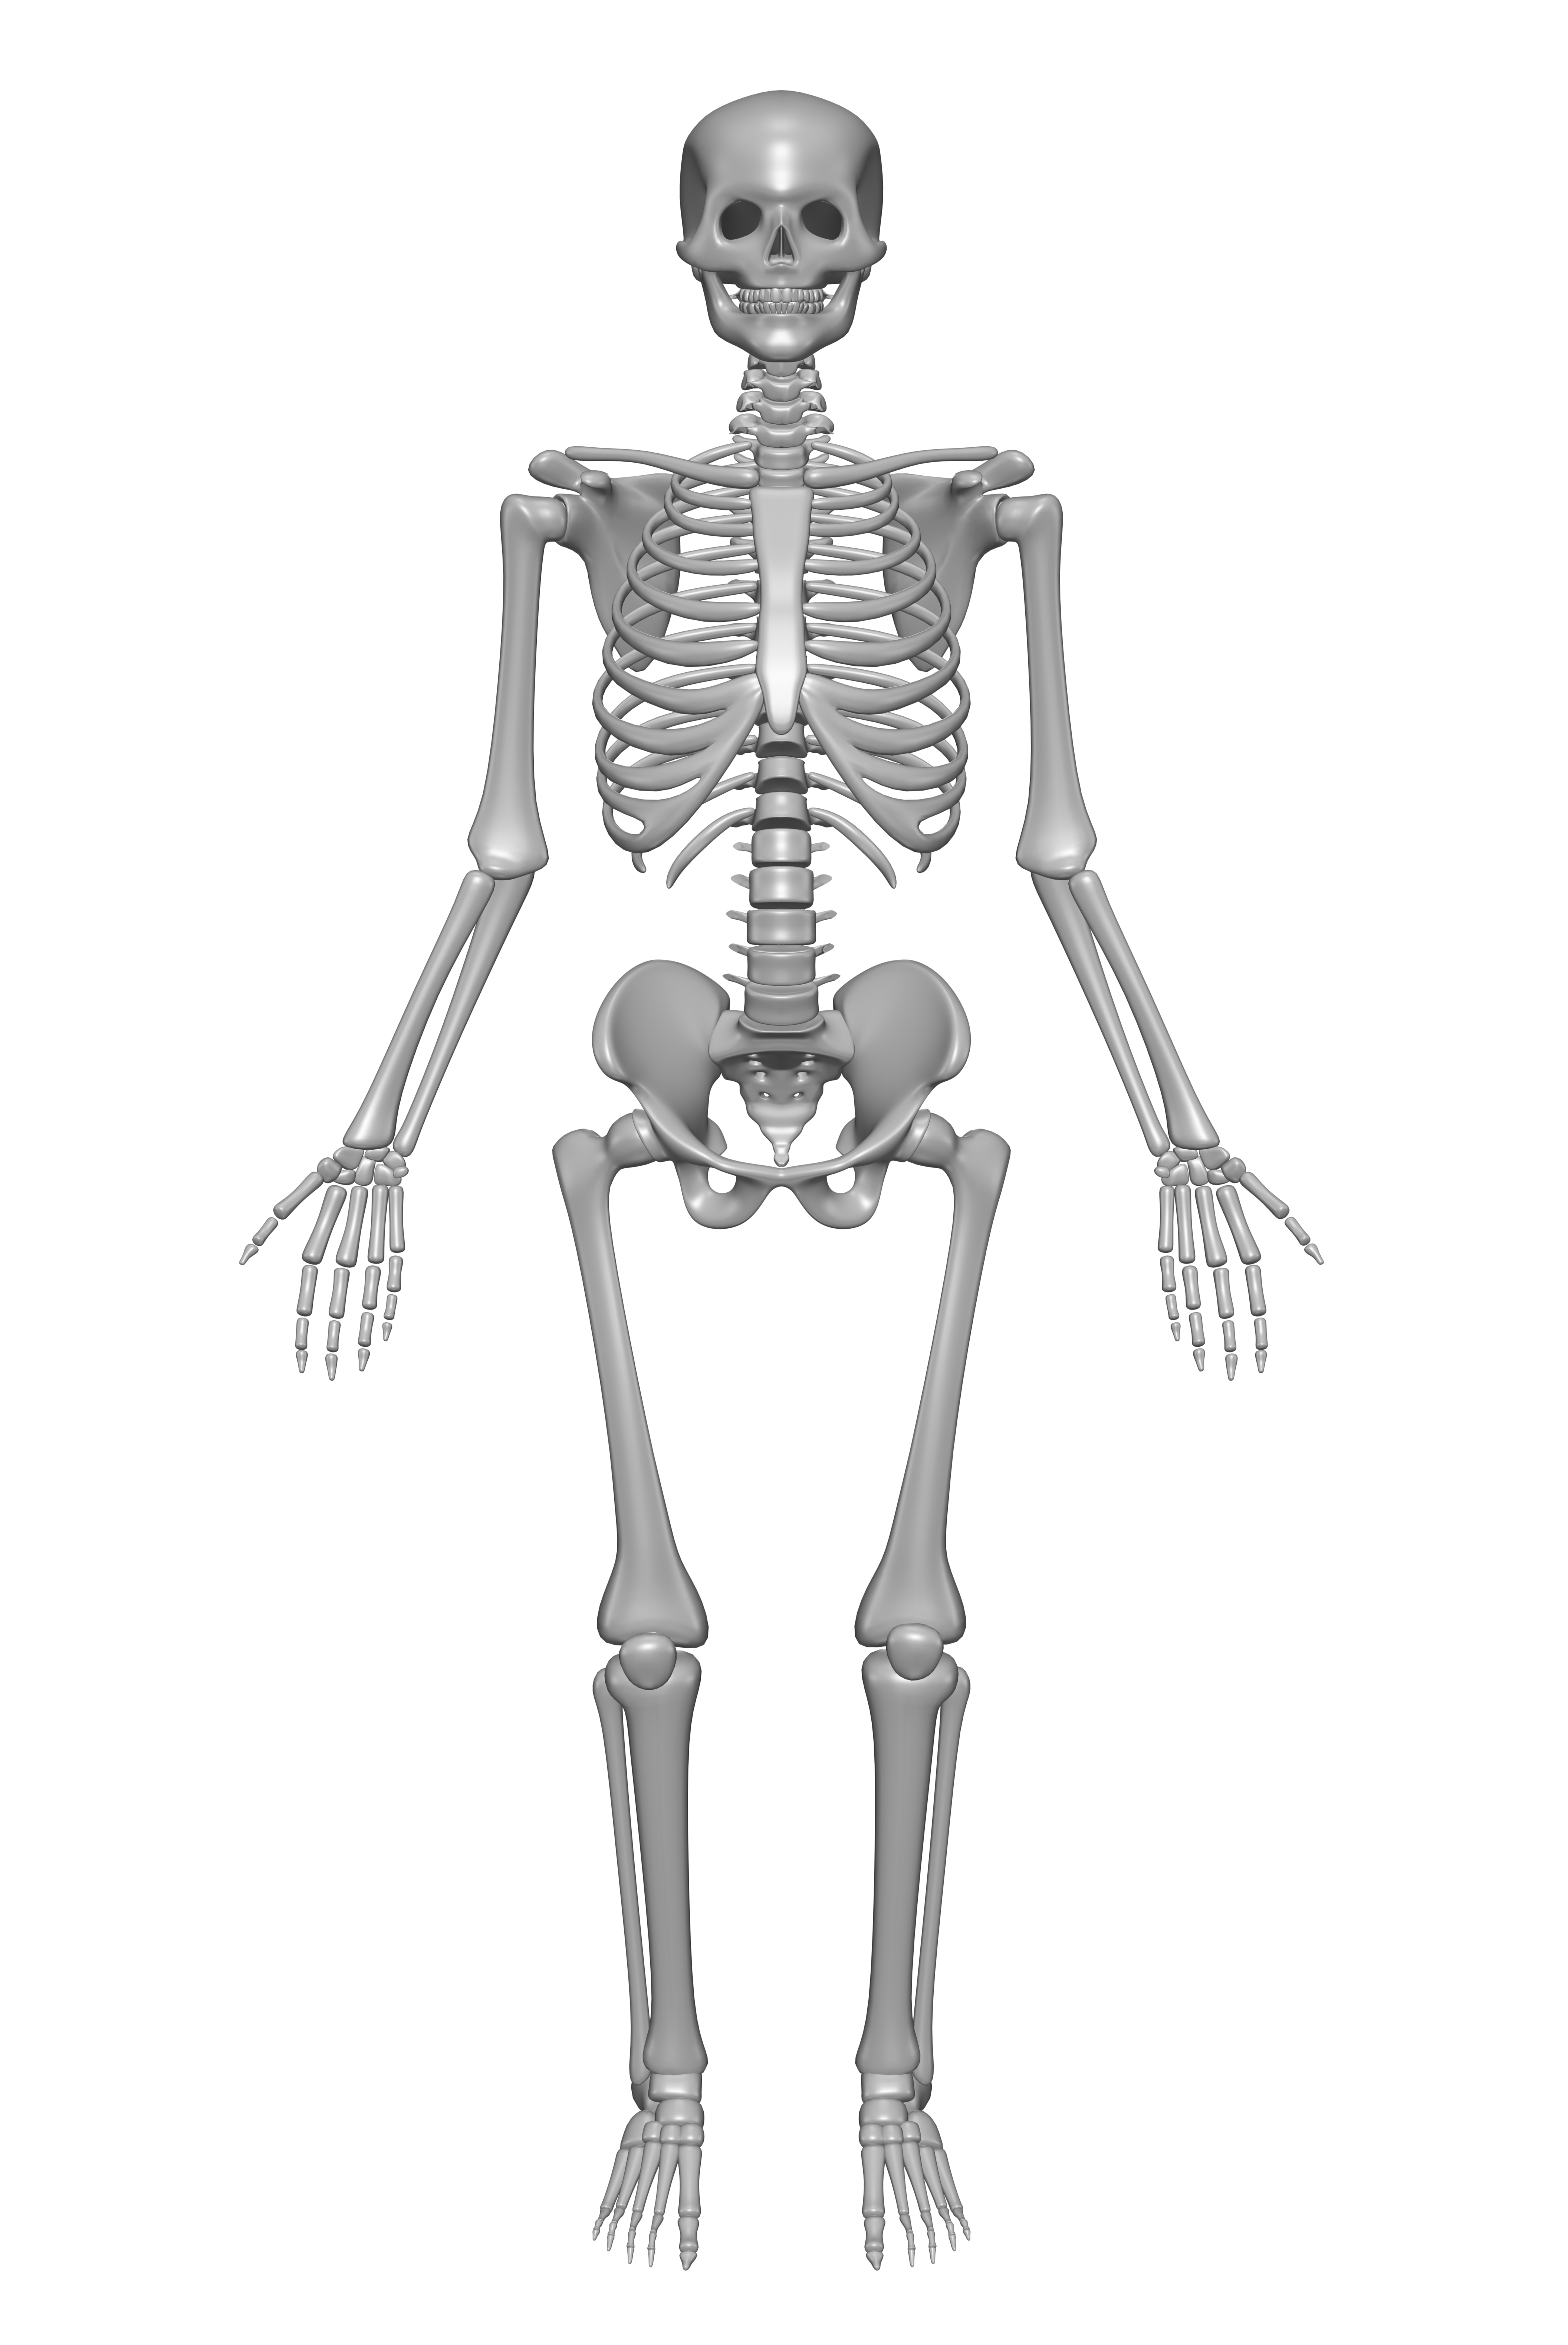 Human Skeleton drawing free image download